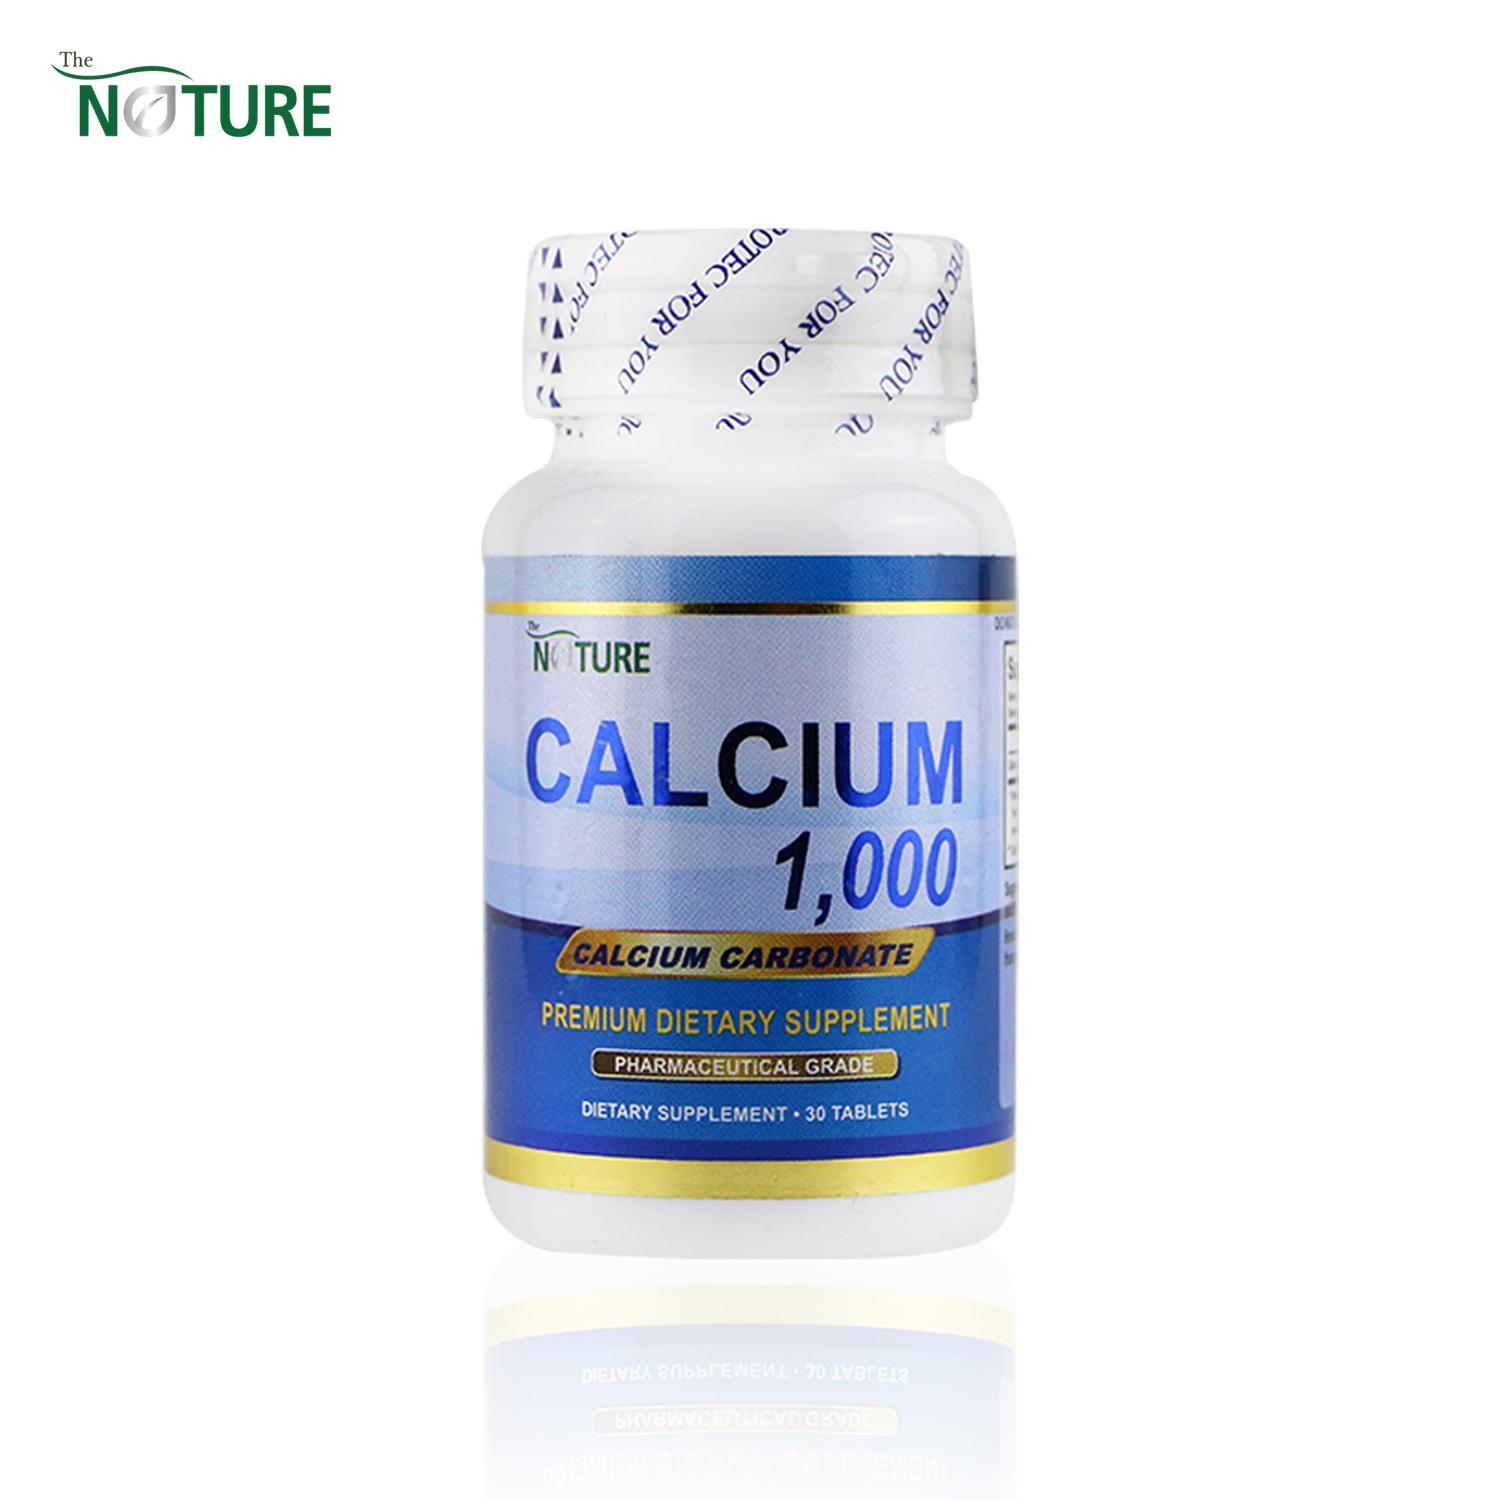 แคลเซียม ขายดีอันดับ 1 เดอะเนเจอร์ 1000 มิลลิกรัม Calcium 1000 THE NATURE ผลิตภัณฑ์เสริมอาหารขายดี